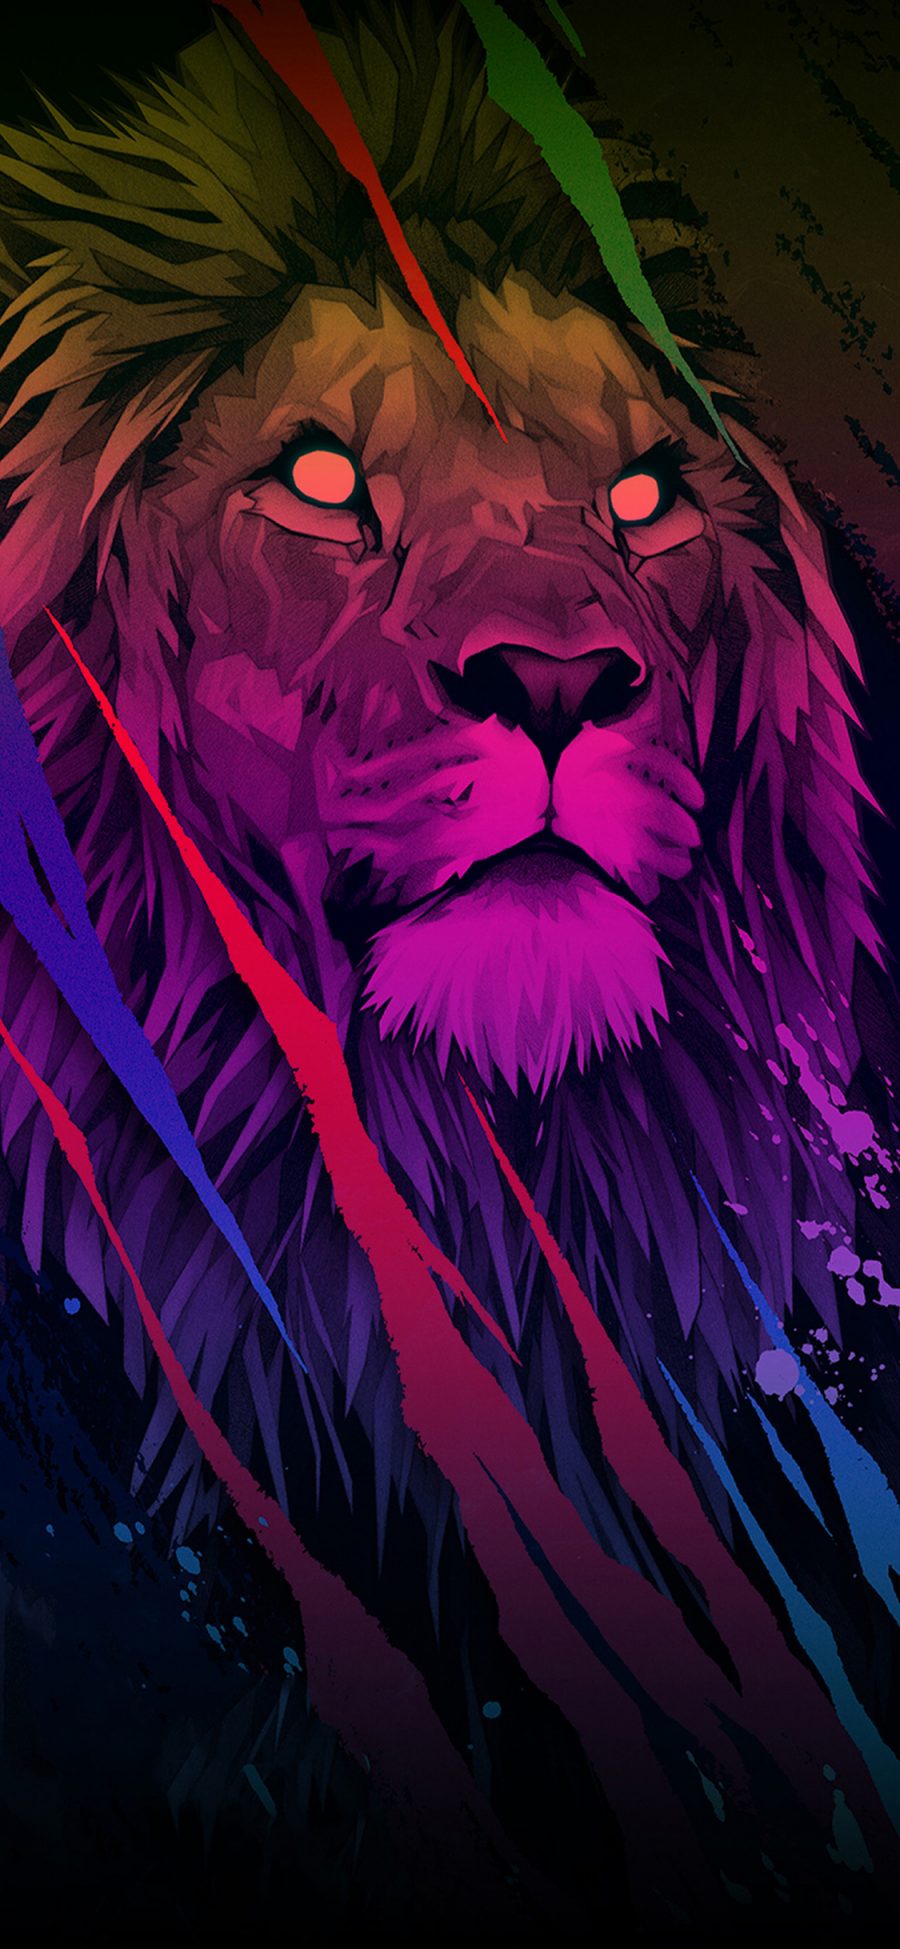 [2436×1125]狮子 插图 色彩 炫酷 苹果手机动漫壁纸图片